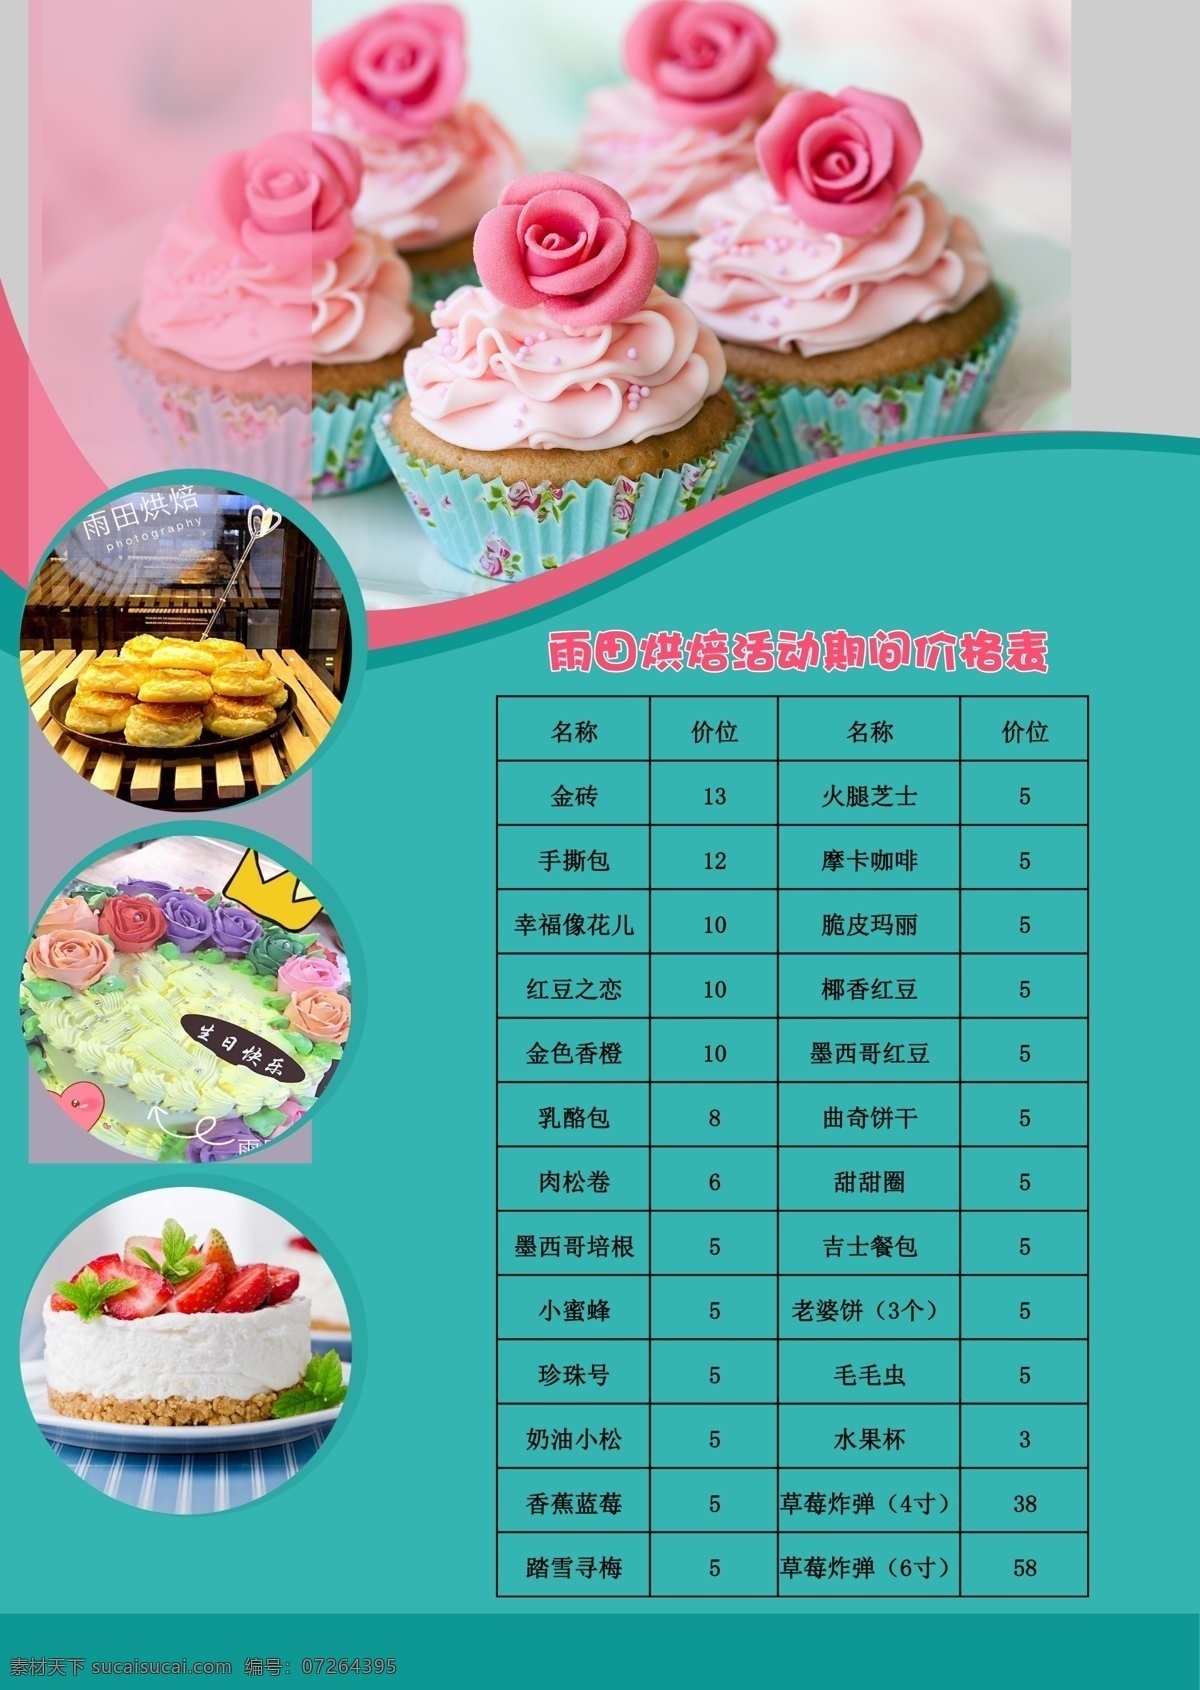 烘焙单页 烘焙 蛋糕 生日蛋糕 宣传画 蛋糕店 价格表 蛋糕海报 分层